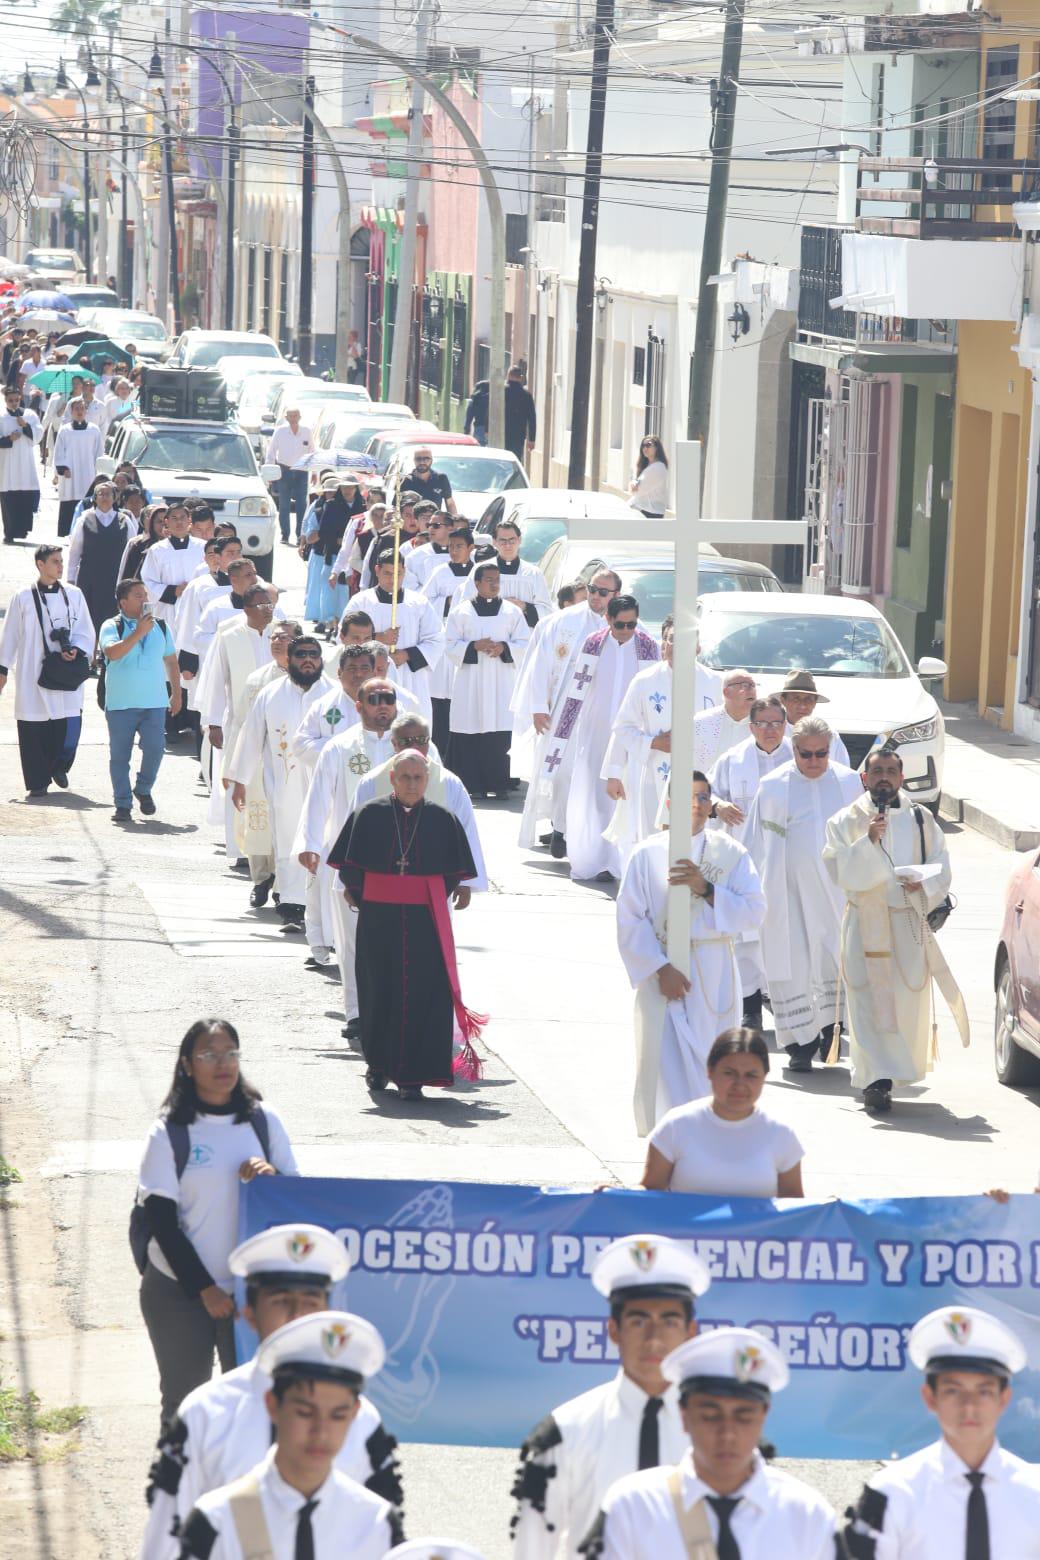 $!Pide Iglesia Católica por la paz, el perdón y los excesos del Carnaval